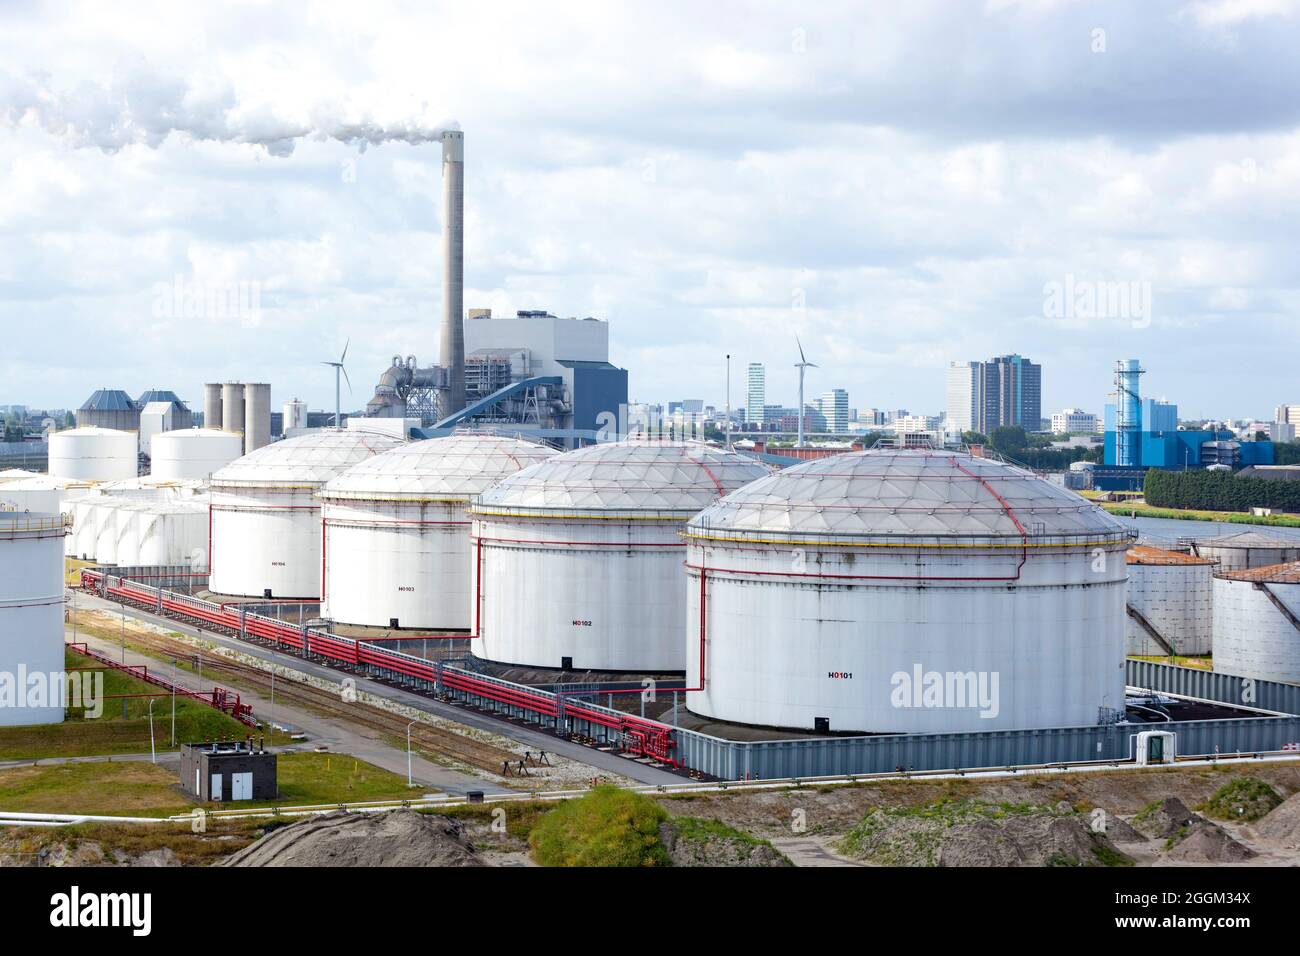 Zeebrugge industrial port, Belgium, Europe Stock Photo